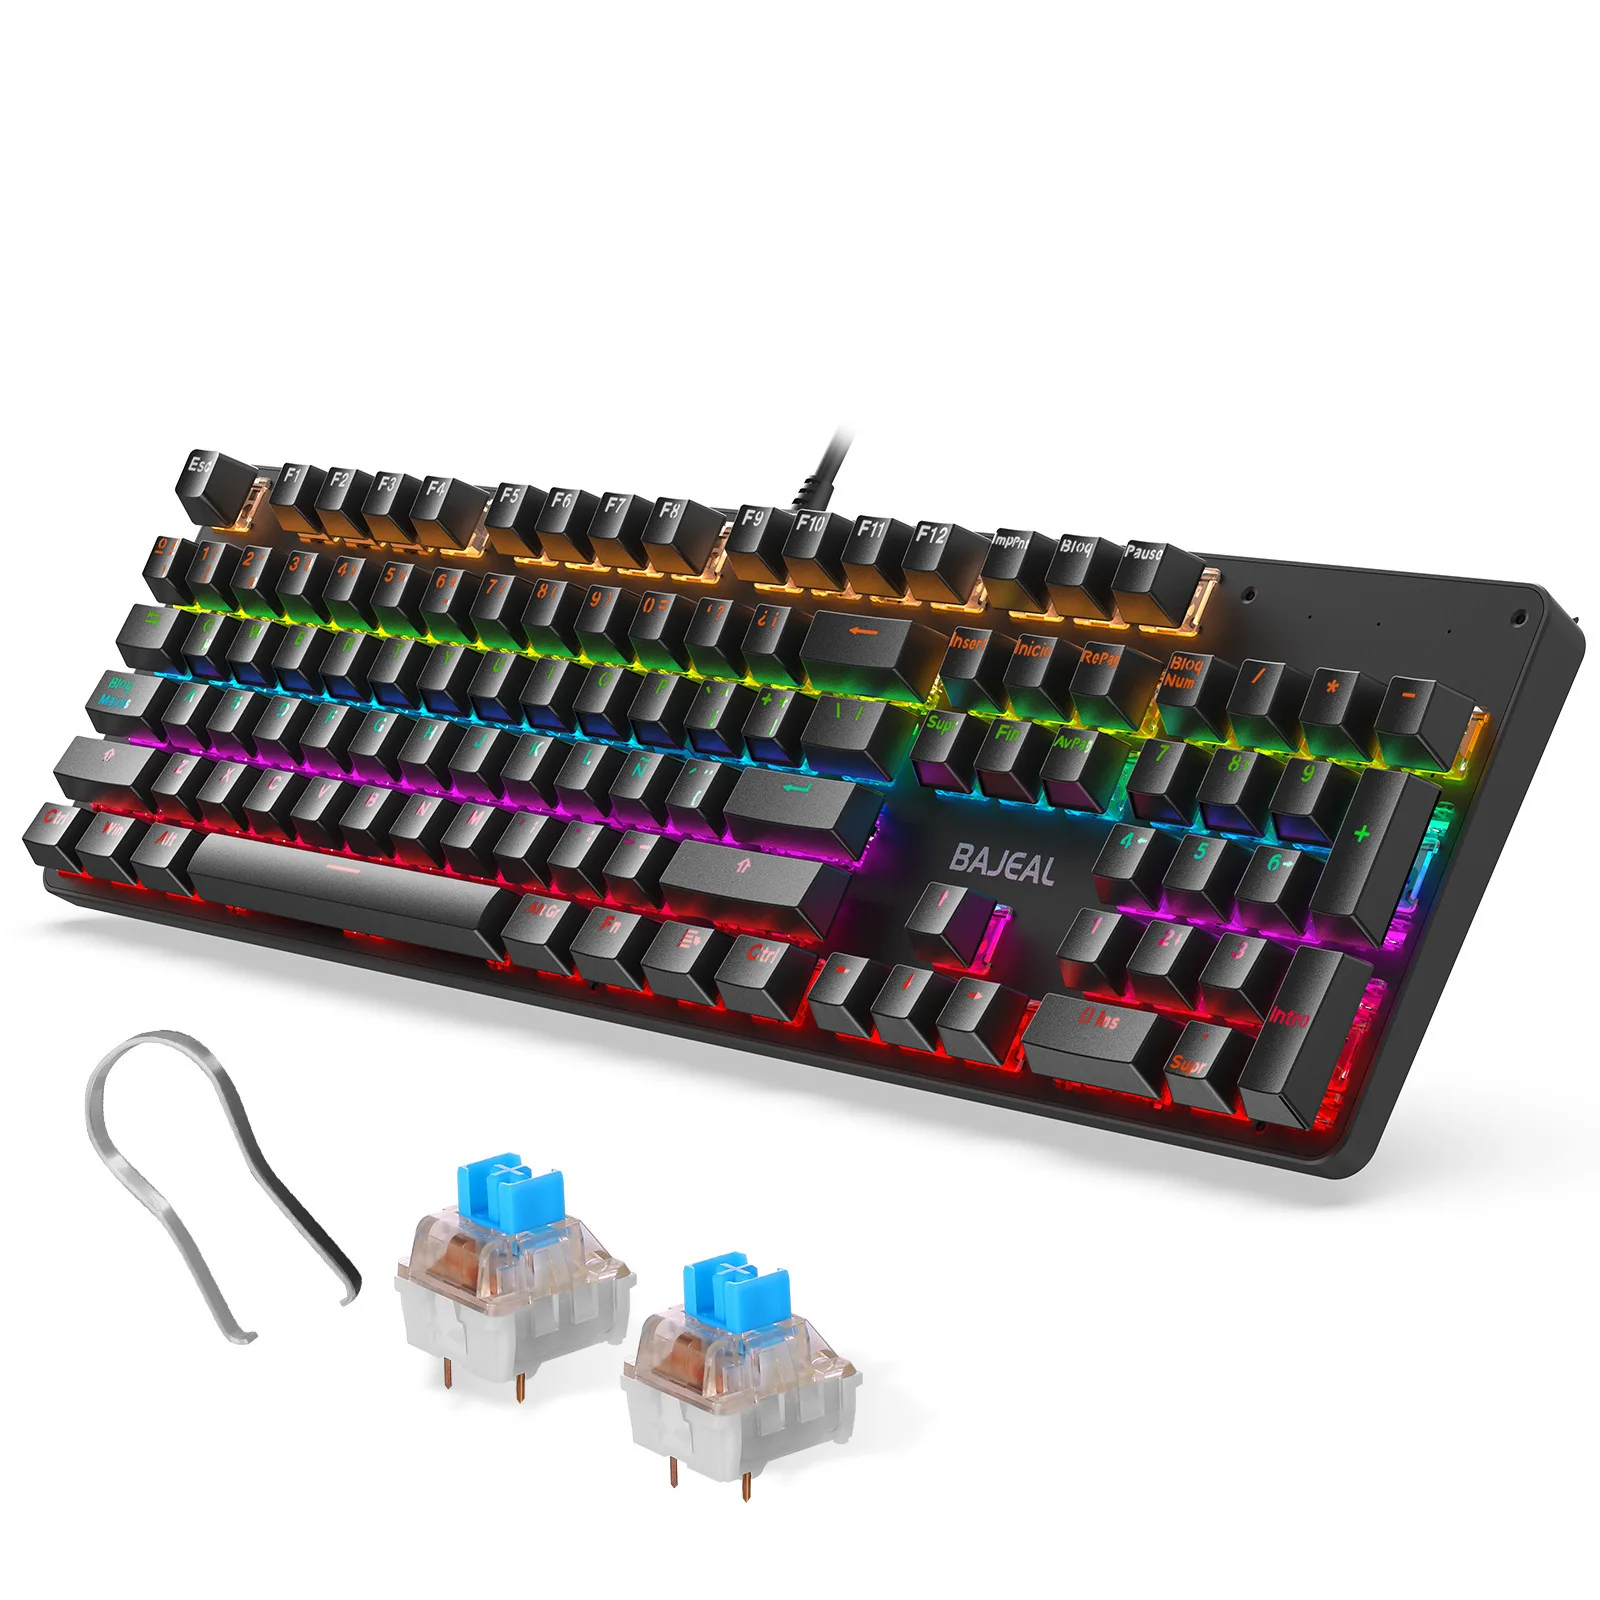 

Проводная игровая клавиатура с испанской раскладкой на 104 клавиш, механическая клавиатура с USB-подсветкой и зеленой осью, Подключаемая ось д...